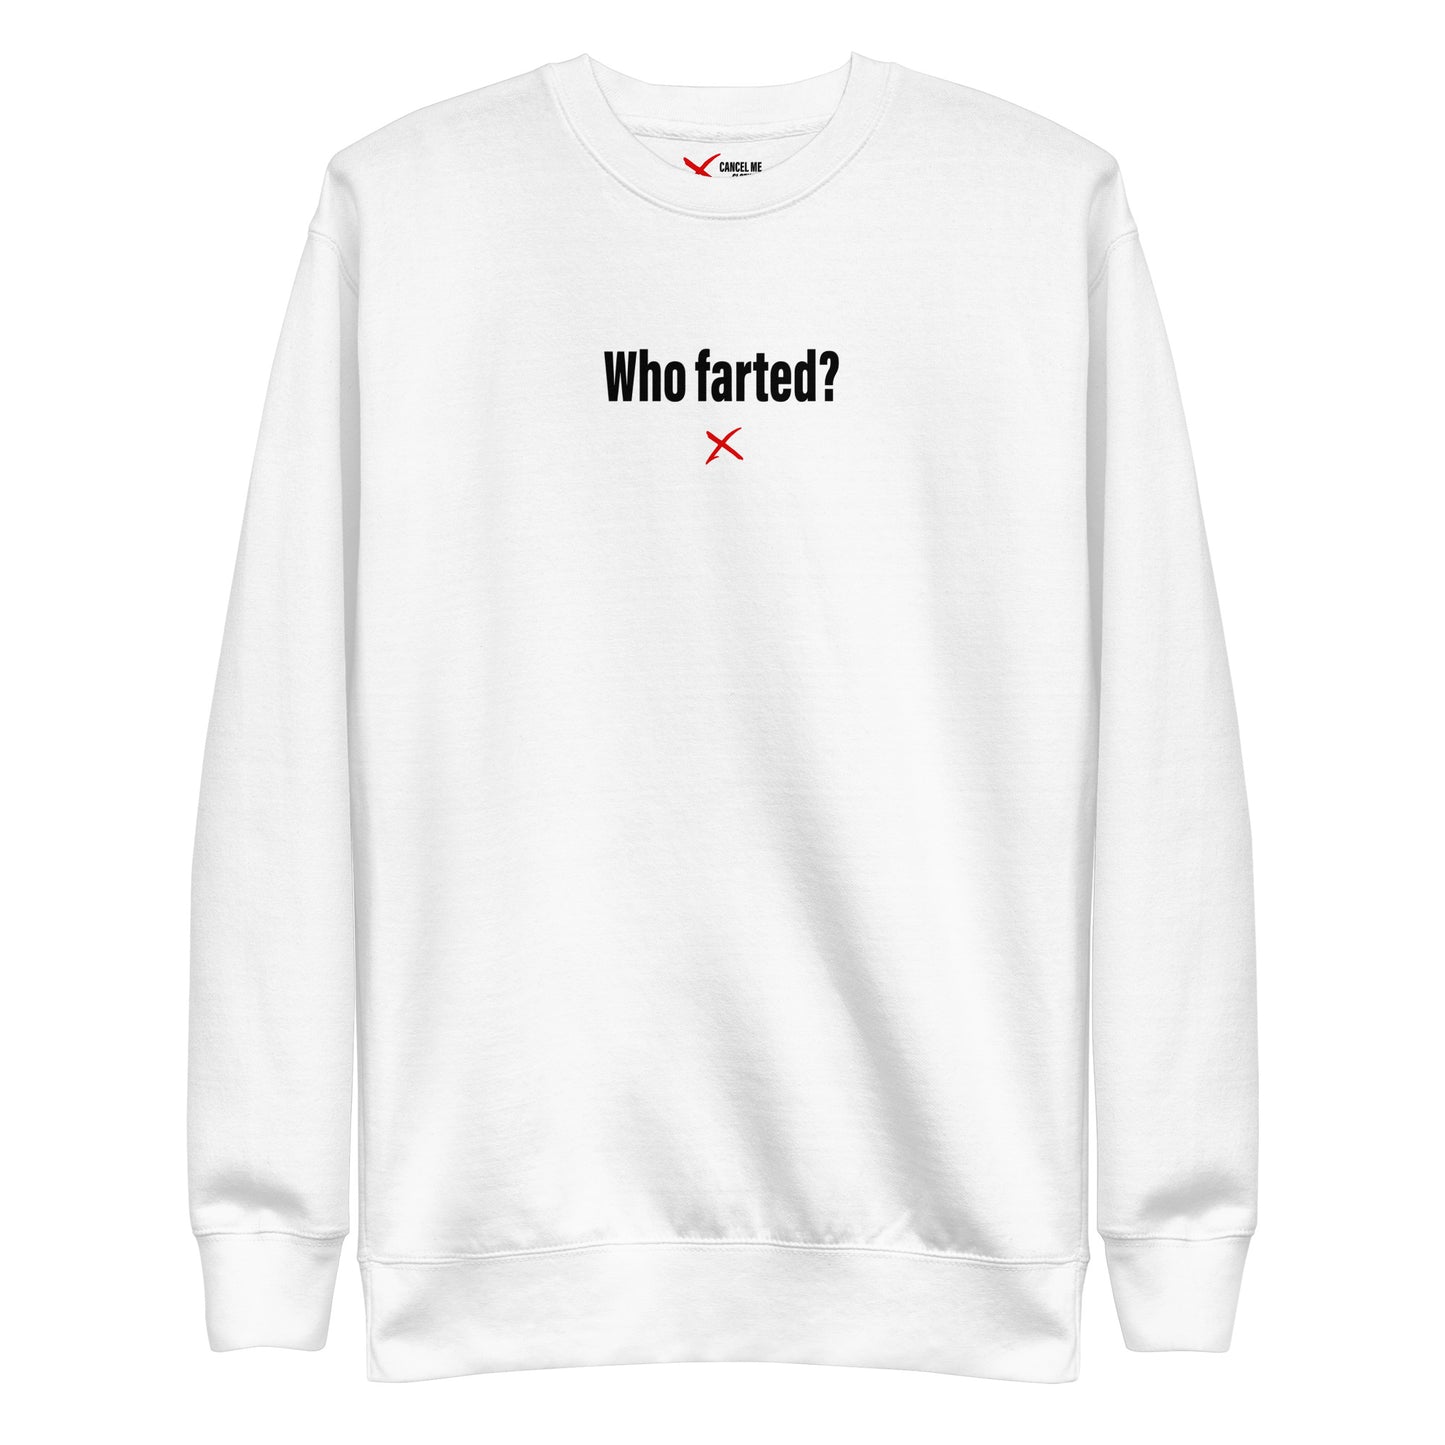 Who farted? - Sweatshirt